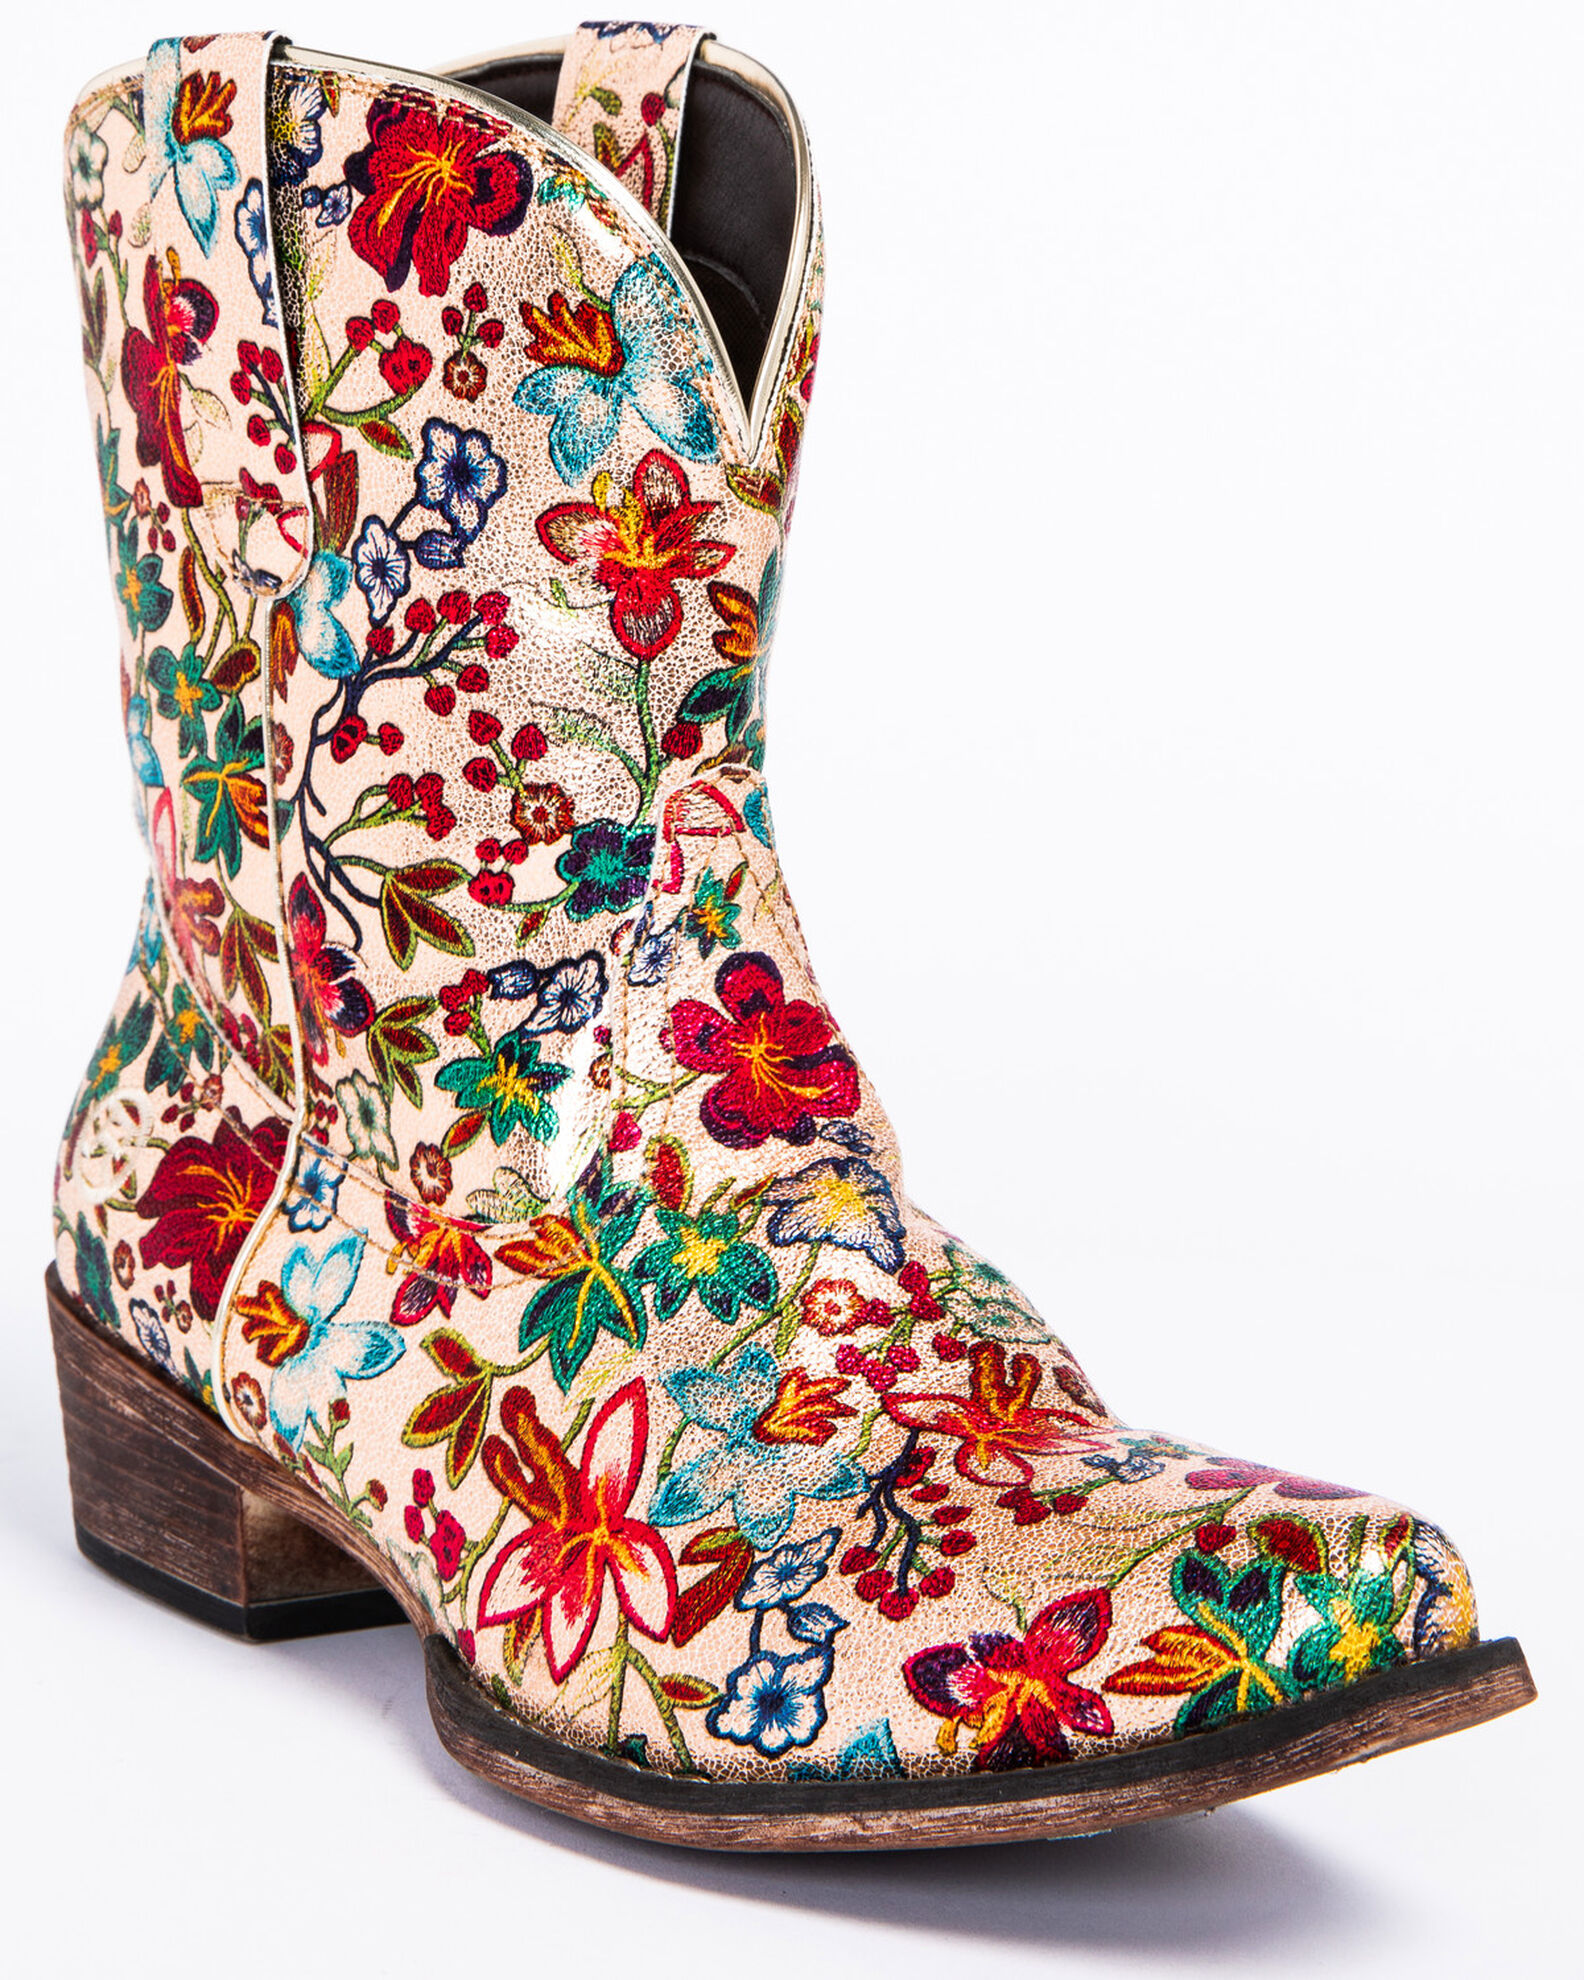 Product Name: Roper Women's Ingrid Floral Western Booties - Snip Toe